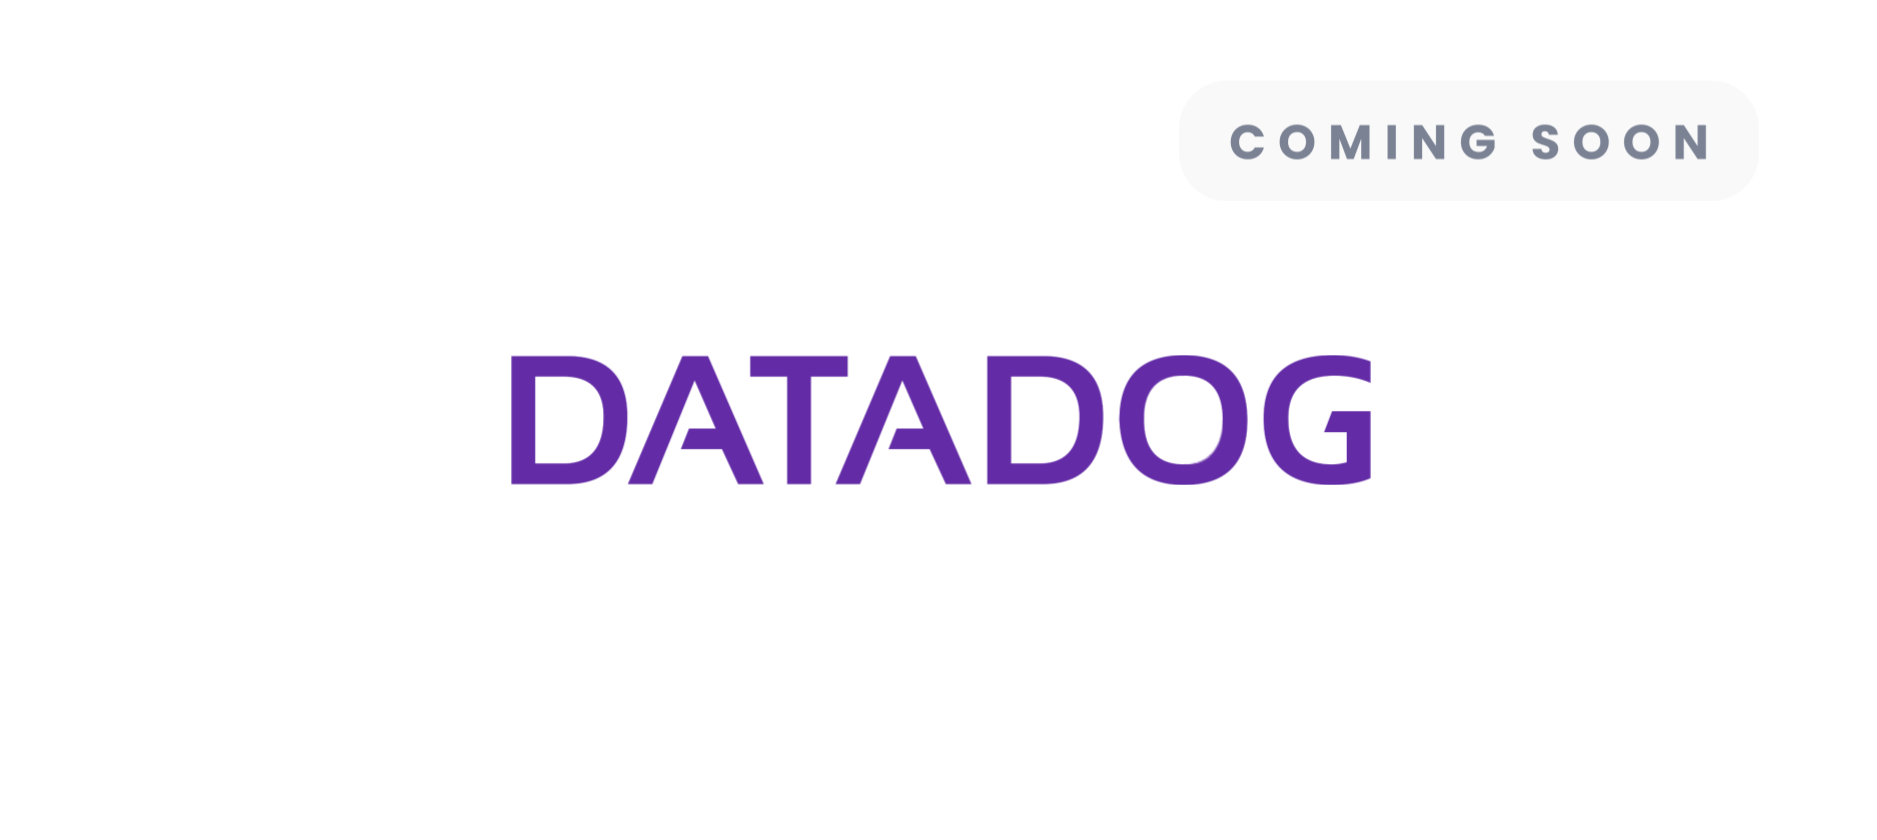 Application Monitoring - Datadog - Coming soon